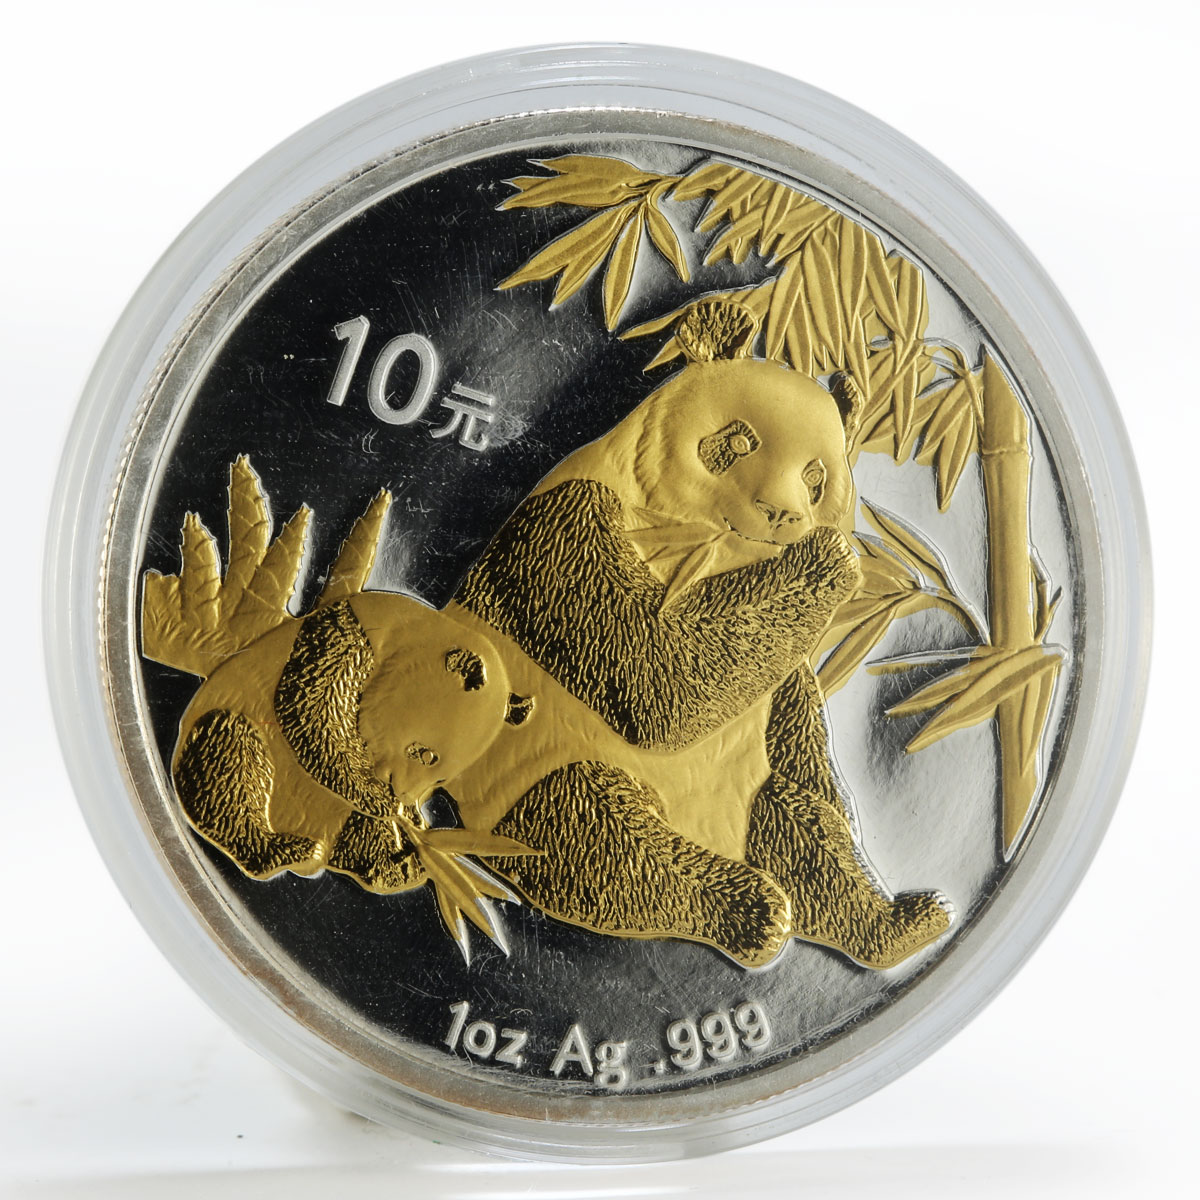 China 10 yuan Panda Series family gilded silver coin 2007